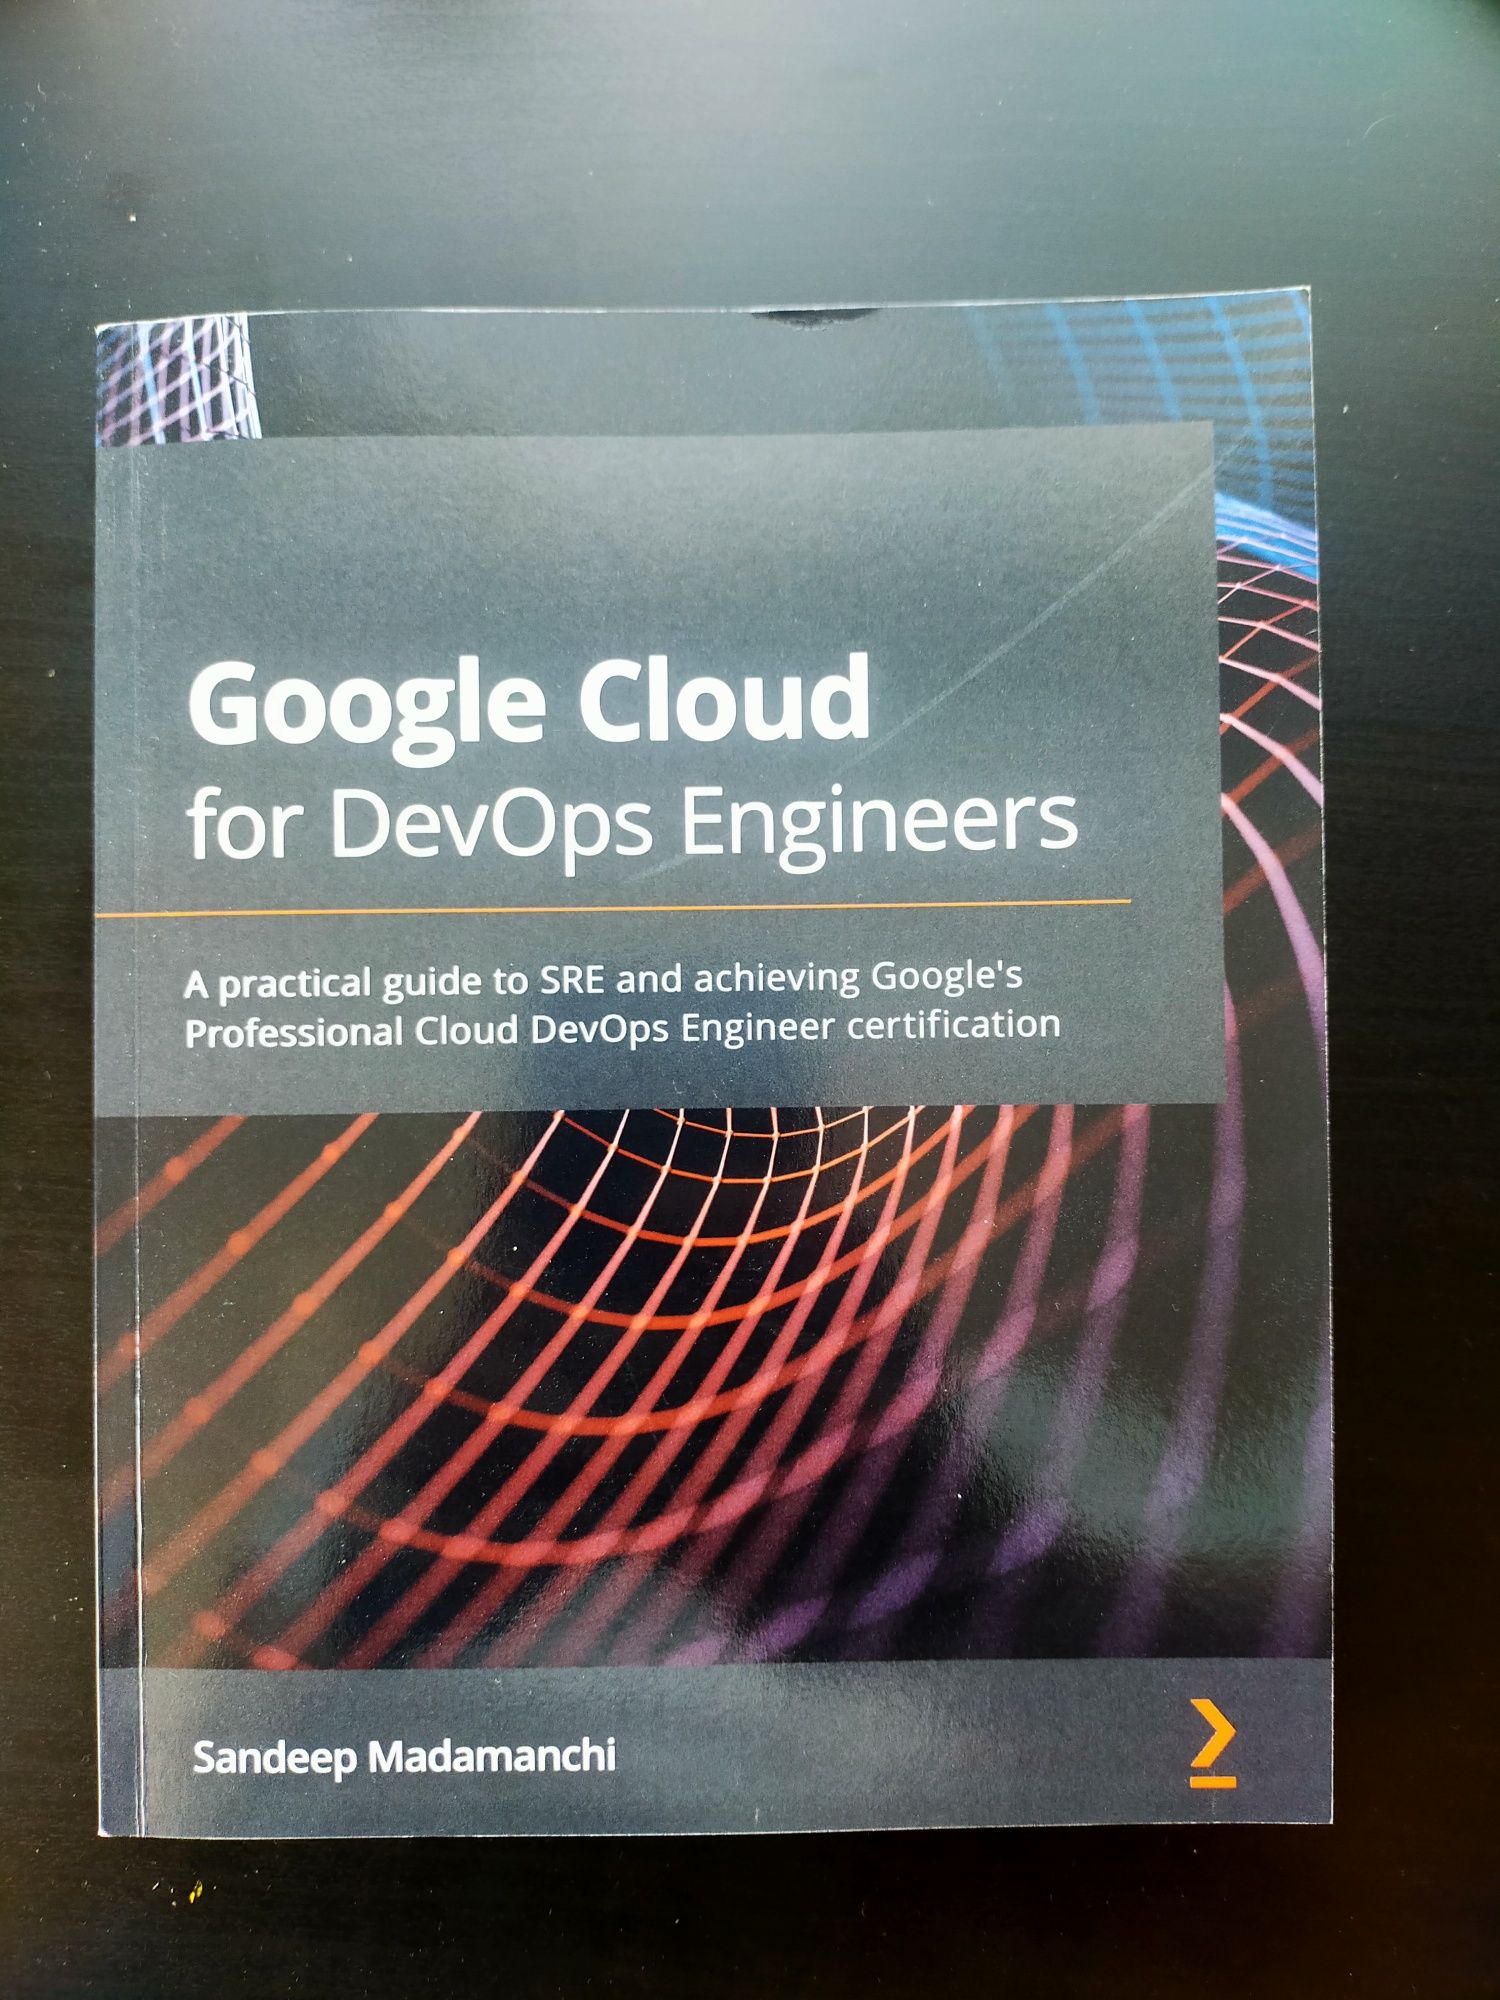 Google Cloud for DevOps Engineers